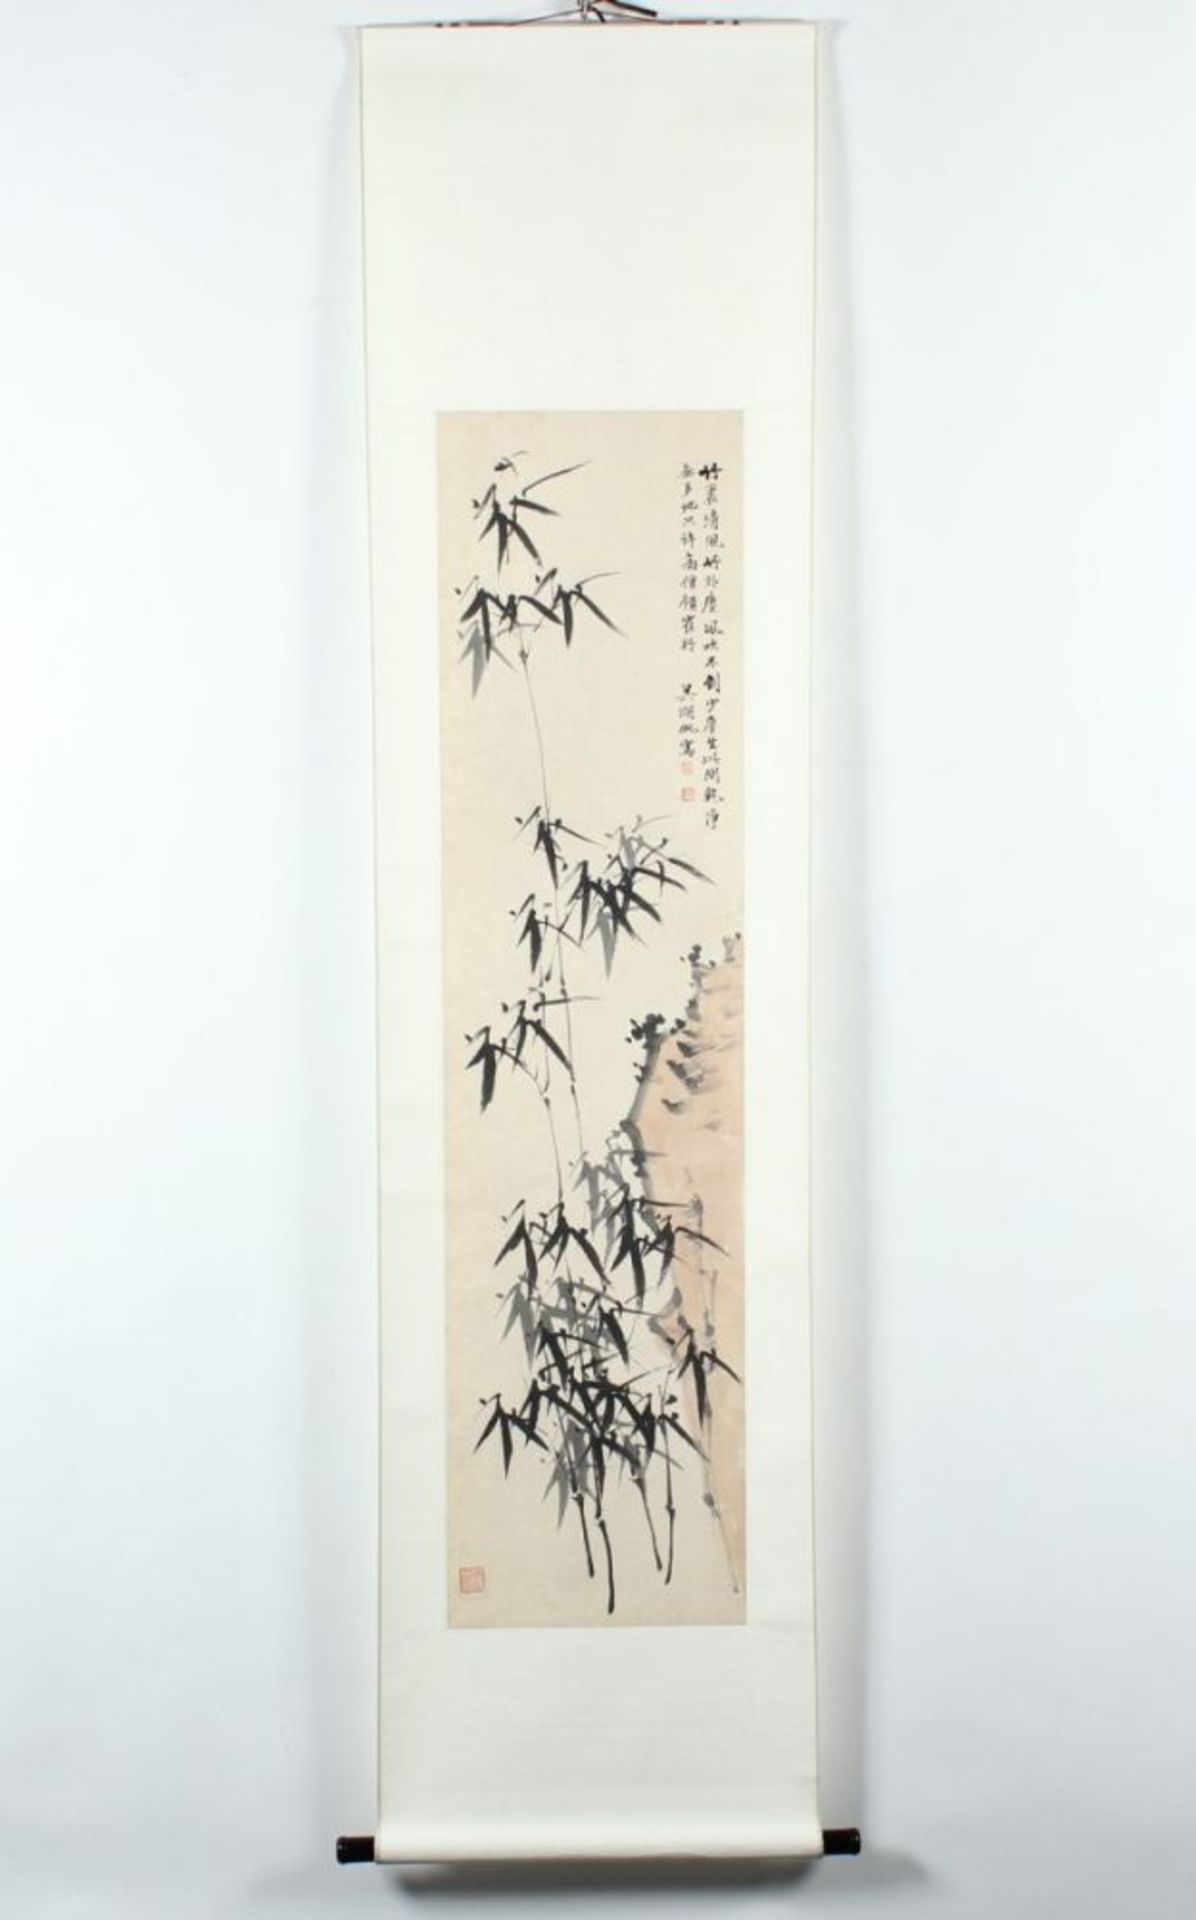 HÄNGEROLLE, Tusche und wenig Farbe auf Papier, Bambus an einem Fels, in der Art von WU HUFAN, - Image 2 of 4